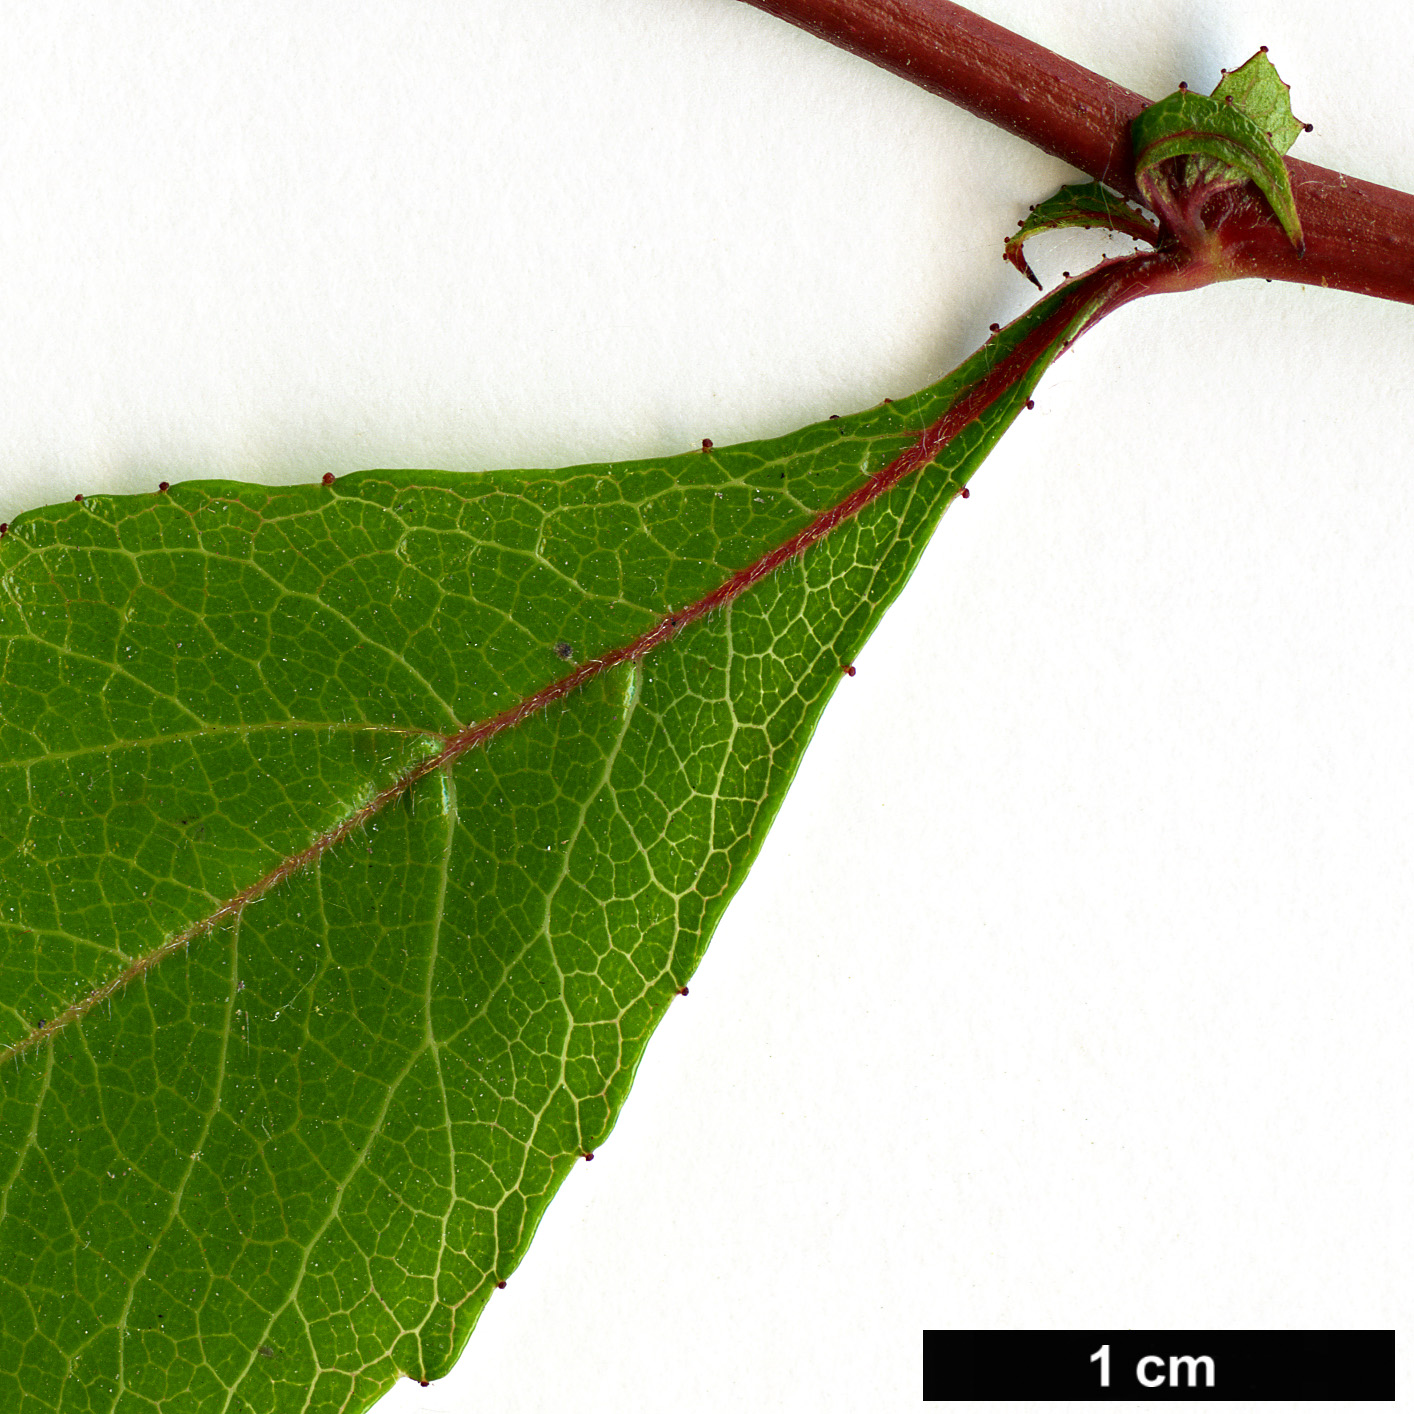 High resolution image: Family: Rosaceae - Genus: Crataegus - Taxon: aestivalis